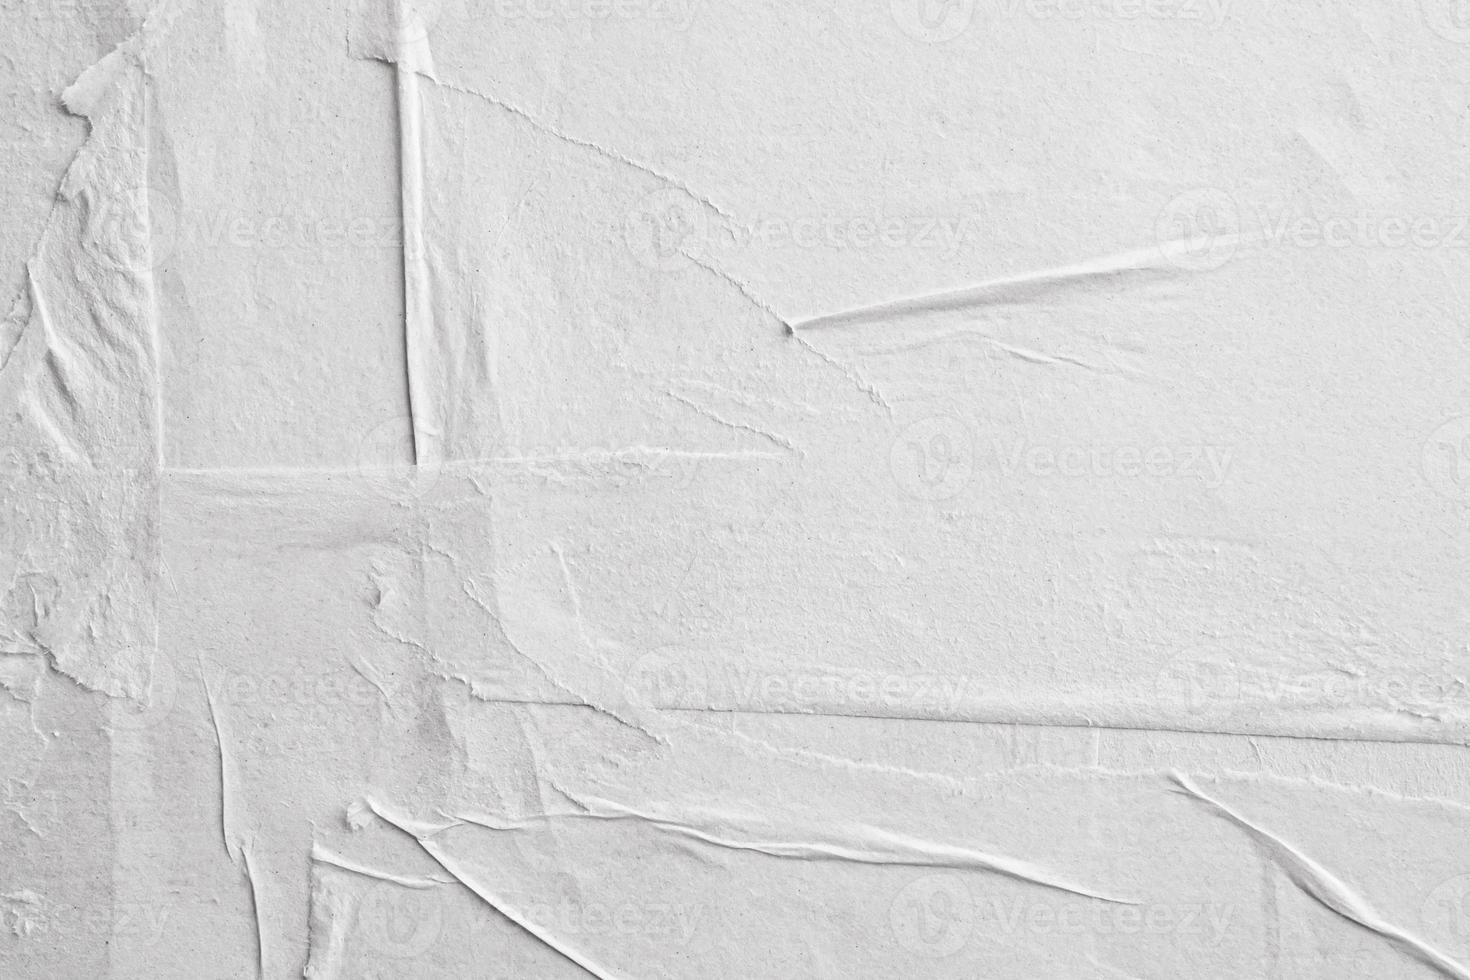 leerer weißer zerknitterter und zerknitterter papierplakatbeschaffenheitshintergrund foto